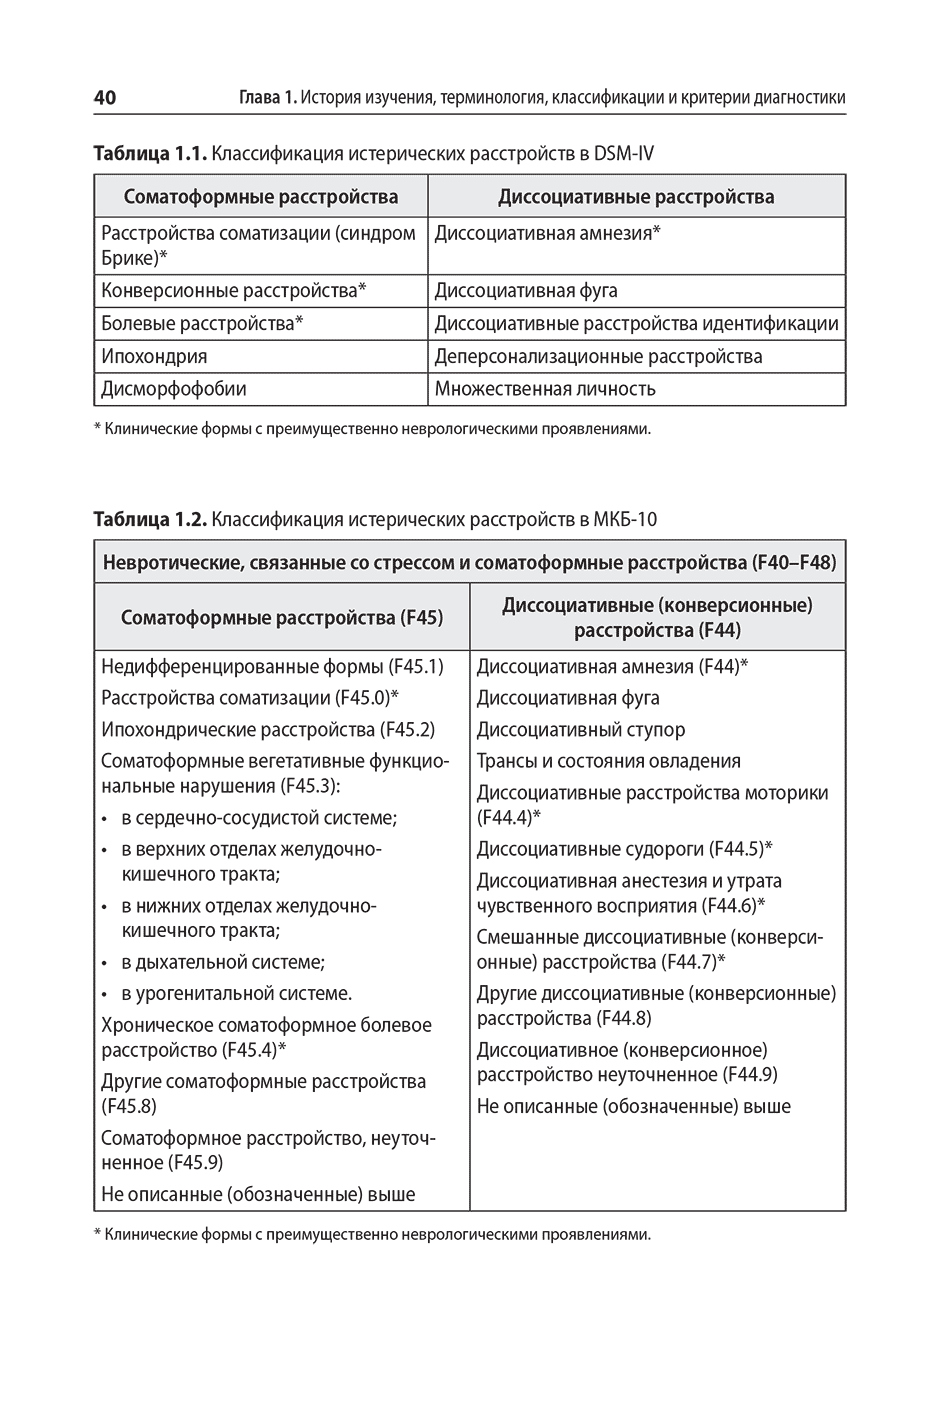 Таблица 1.2. Классификация истерических расстройств в МКБ-10